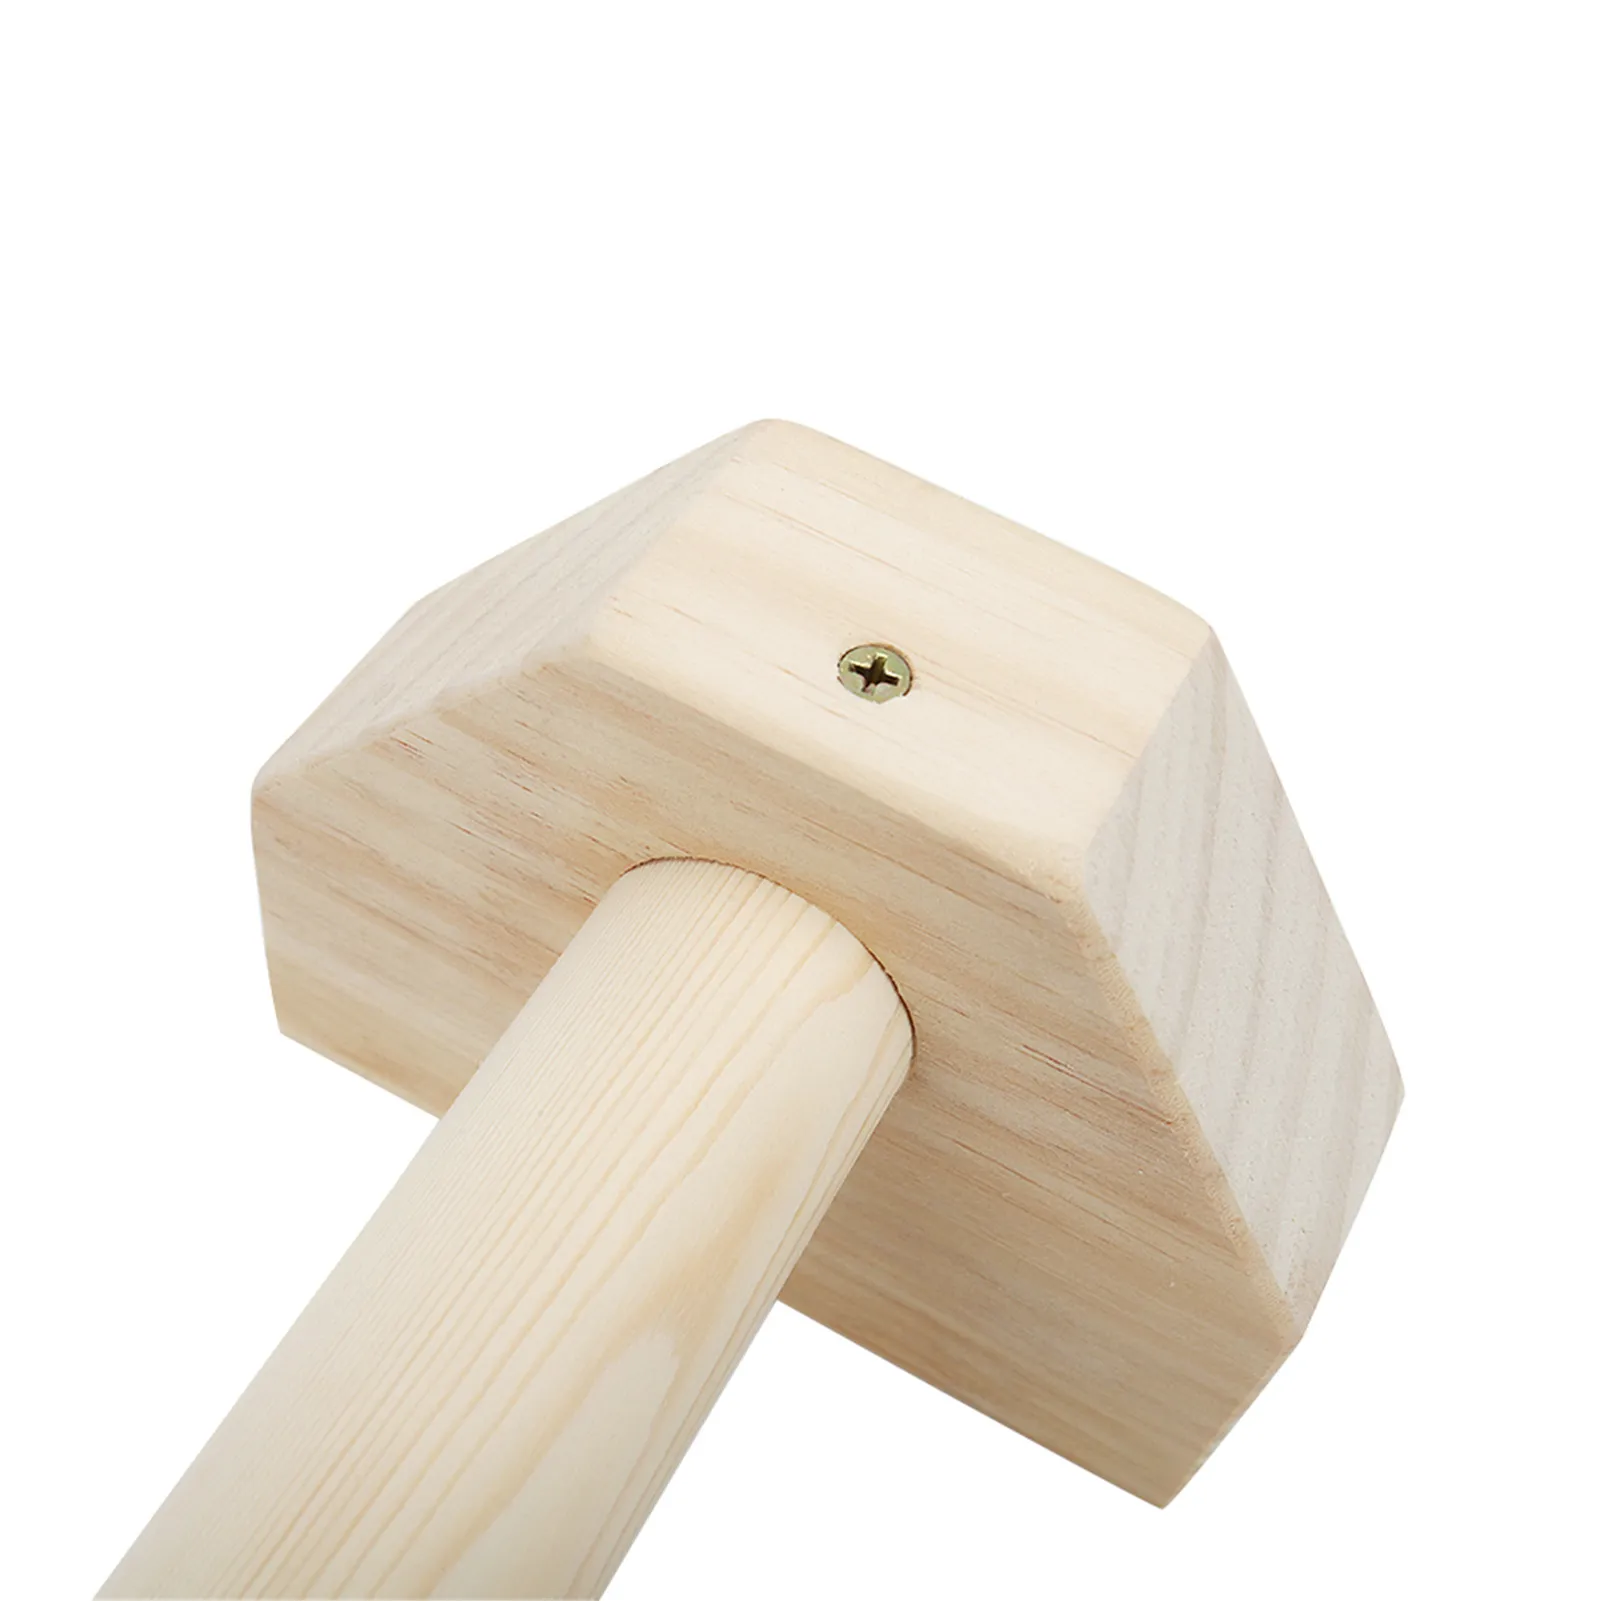 Handostenics ambientale di legno ambientale a forma di handenics per push-up a doppia canna da barra a doppia canna.